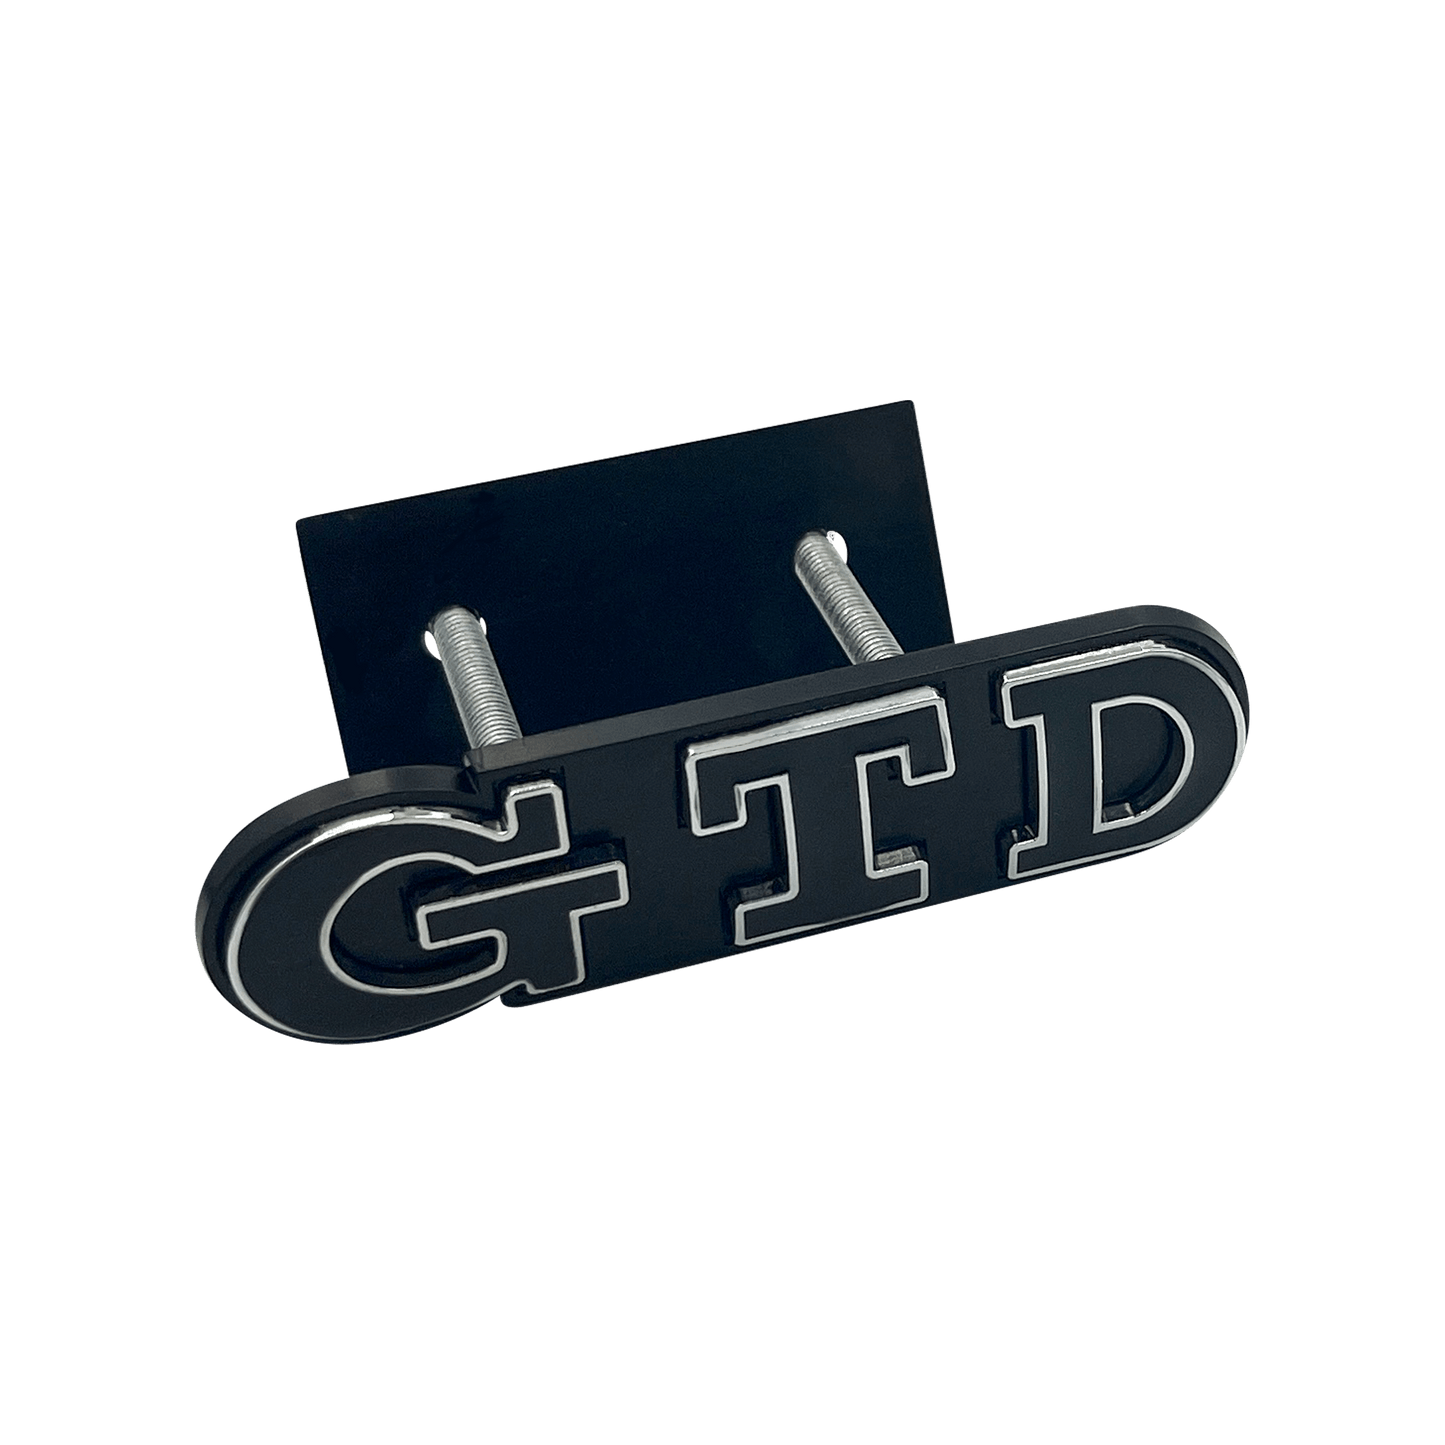 Sort VW GTD Front Emblem Badge